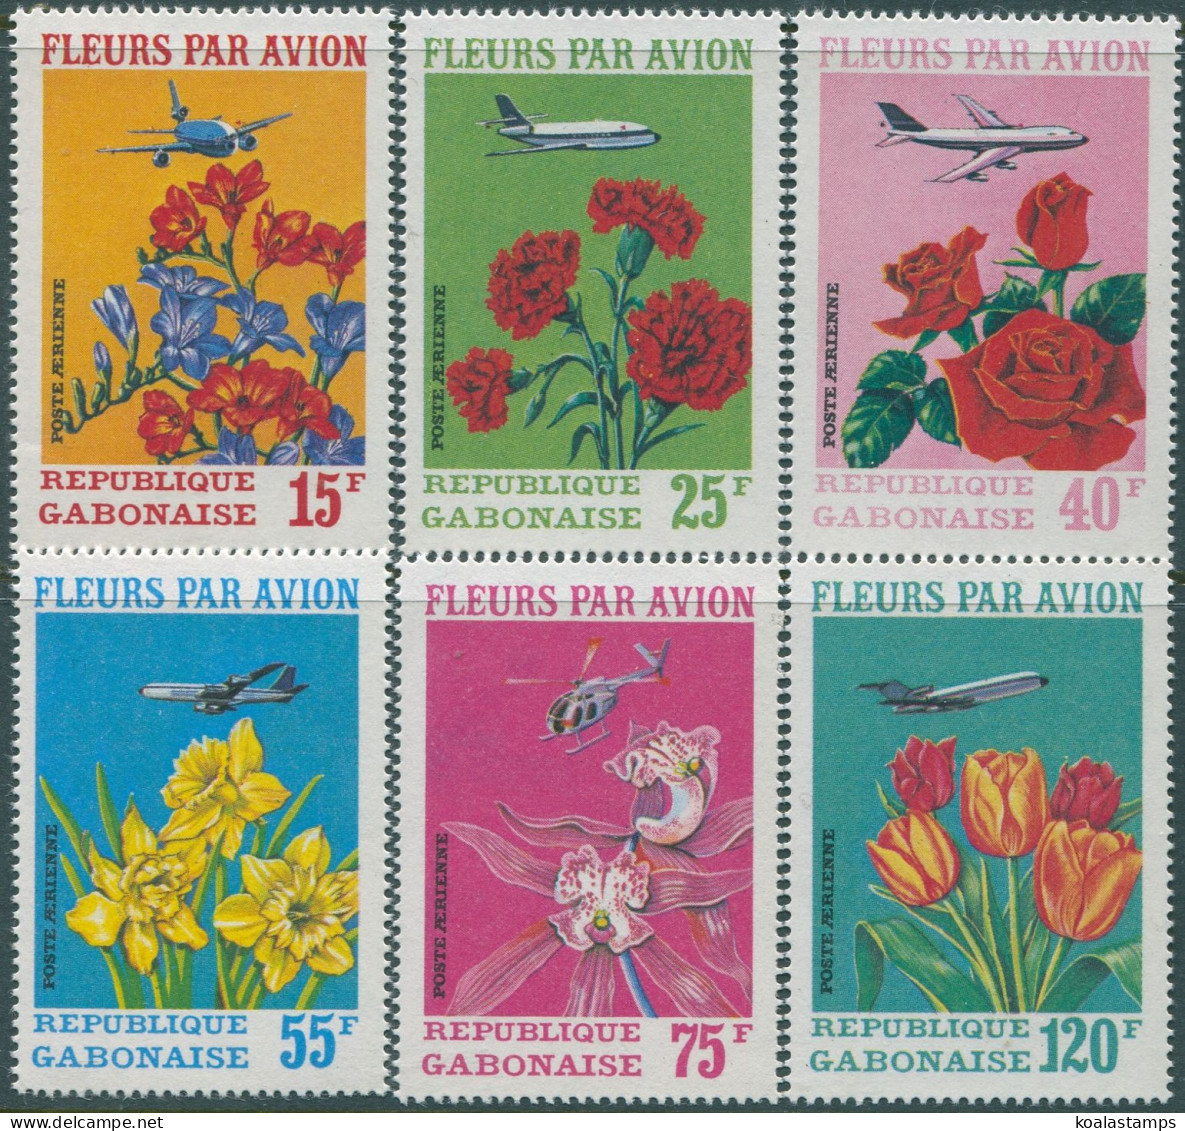 Gabon 1971 SG410-415 Flowers Set MNH - Gabon (1960-...)